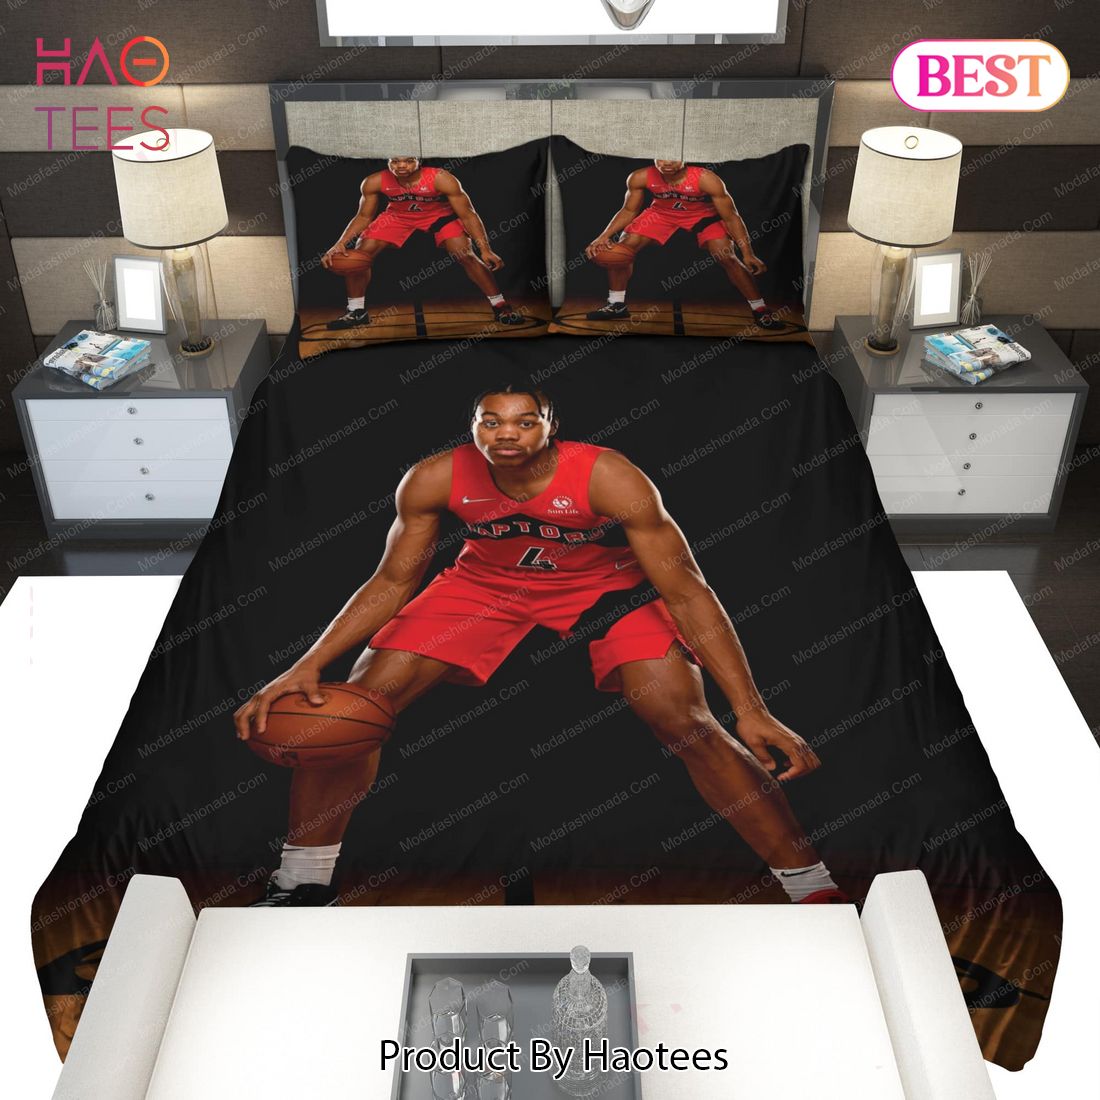 Buy Scottie Barnes Toronto Raptors NBA 197 Bedding Sets Bed Sets, Bedroom Sets, Comforter Sets, Duvet Cover, Bedspread